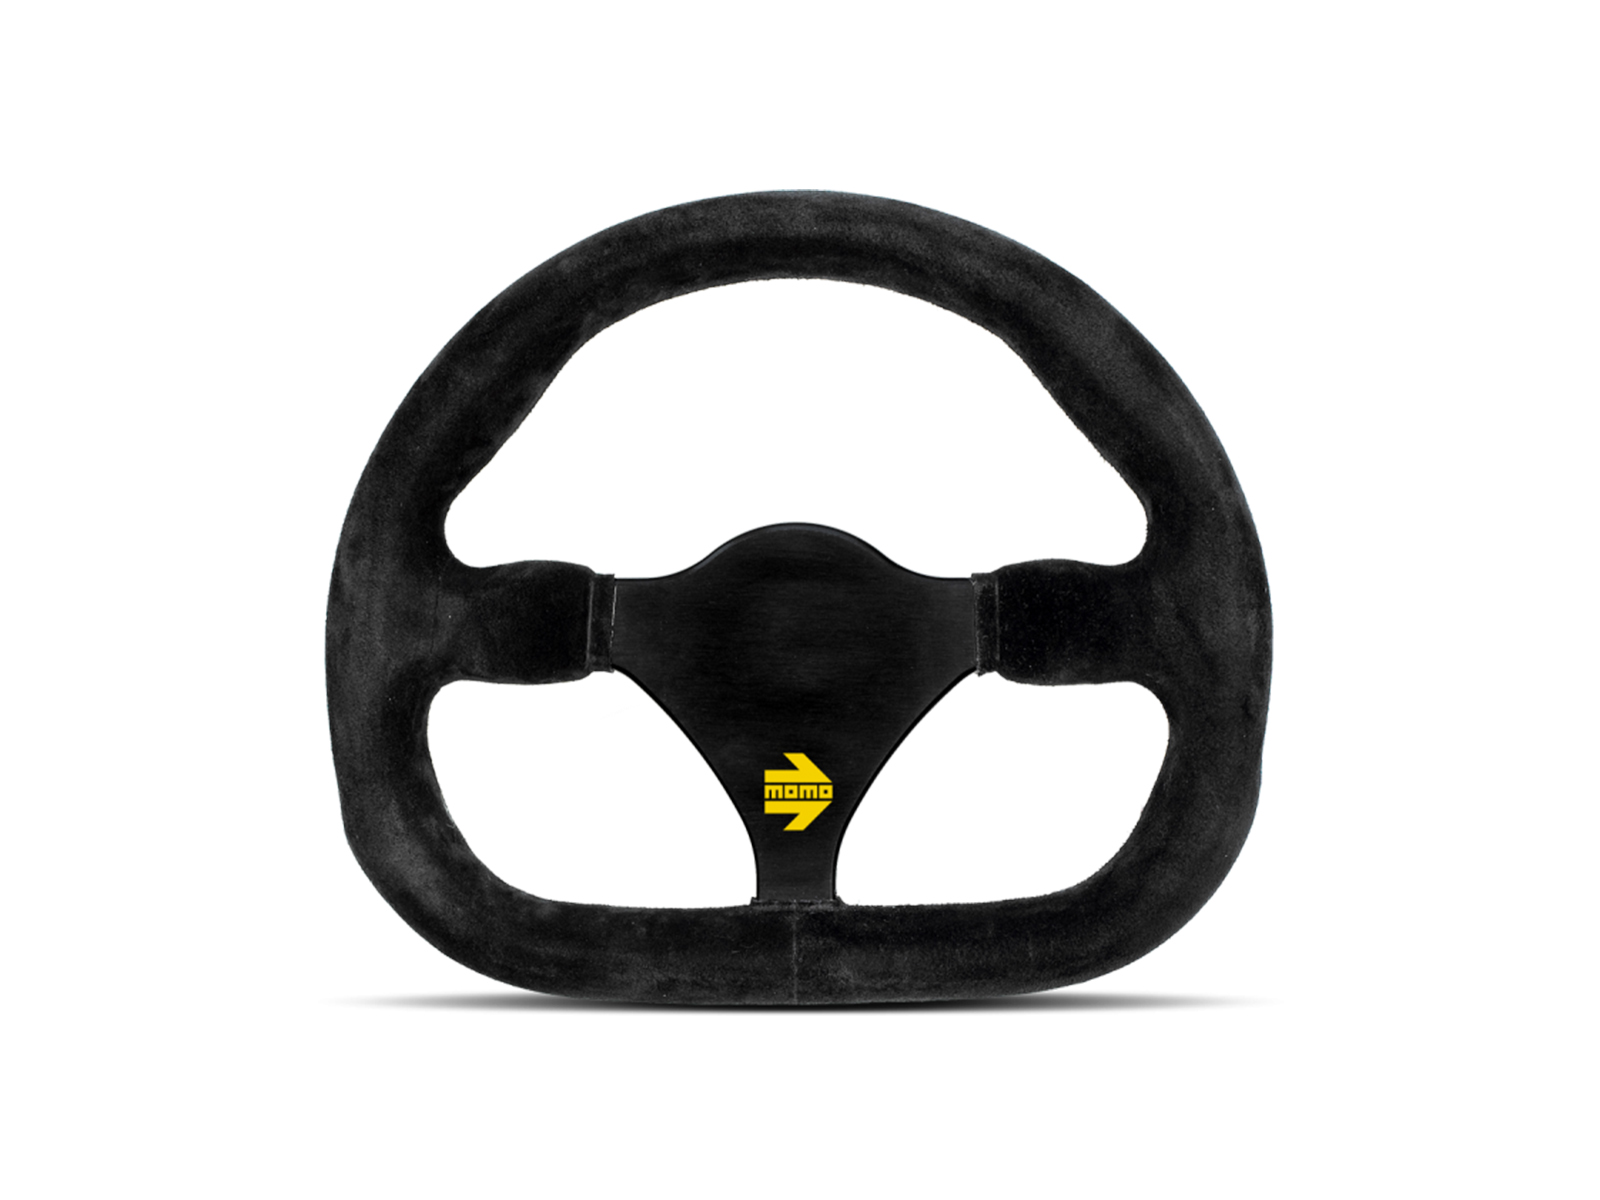 Momo MOD27 Steering Wheel 270mm - Black Suede/Black Spokes